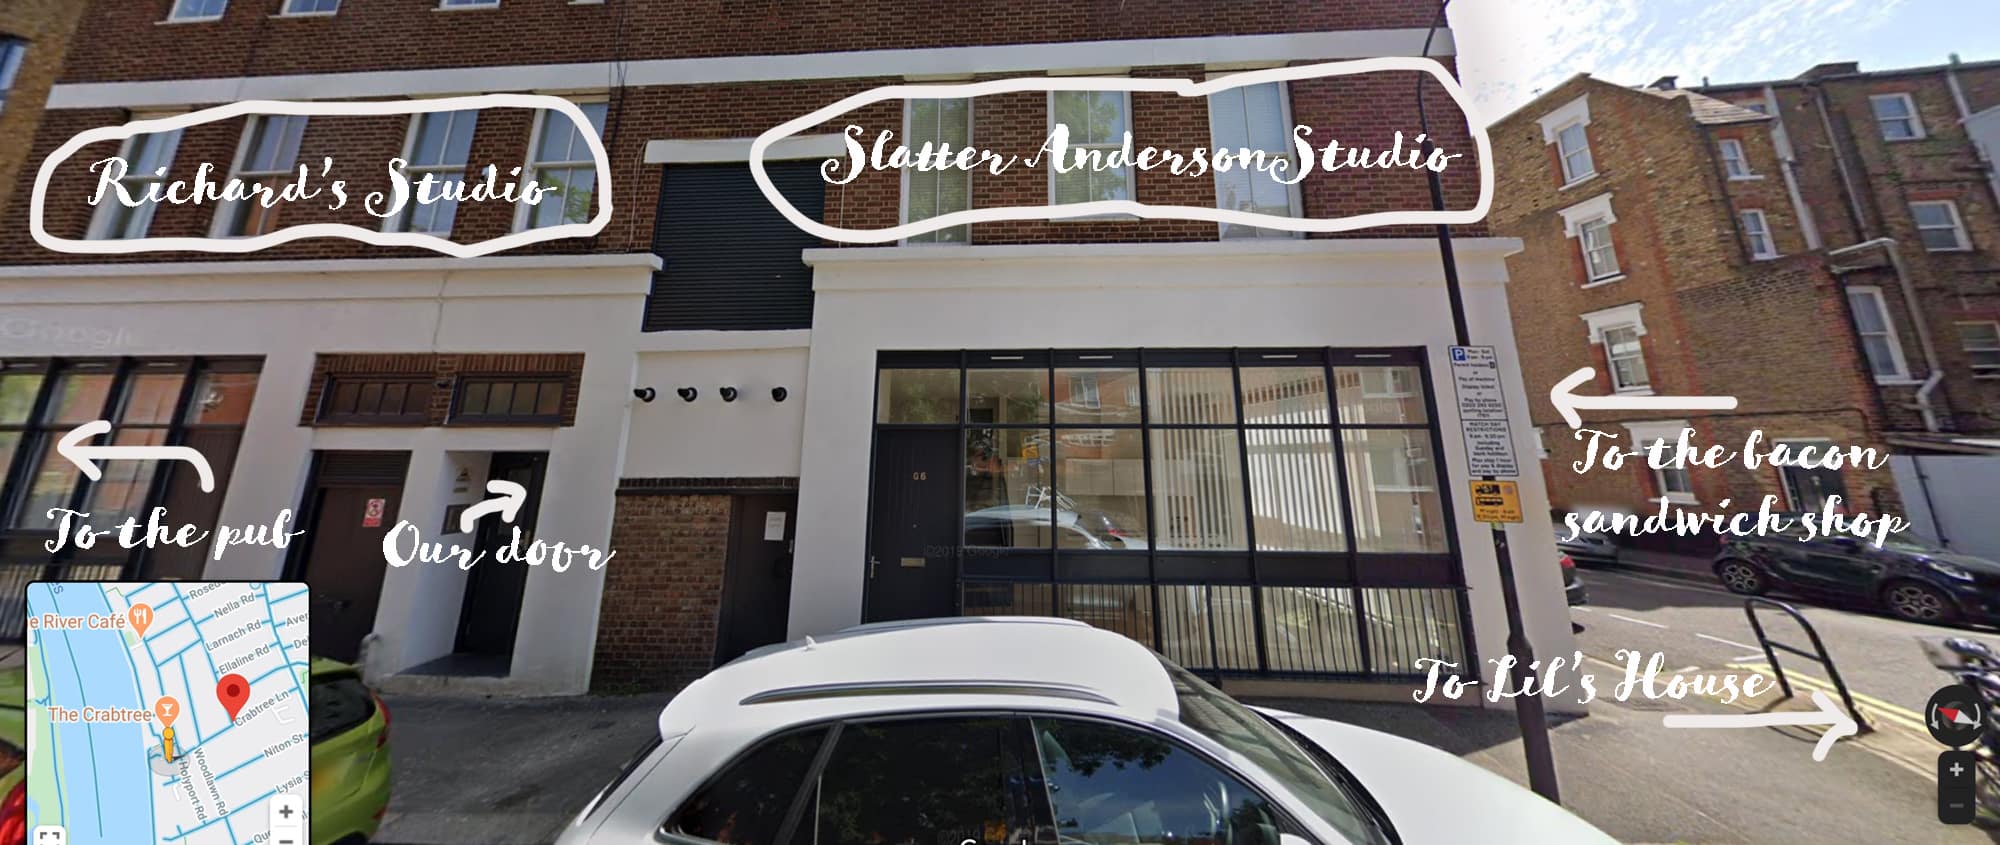 Slatter-Anderson HQ, Reverside Studios, Fulham